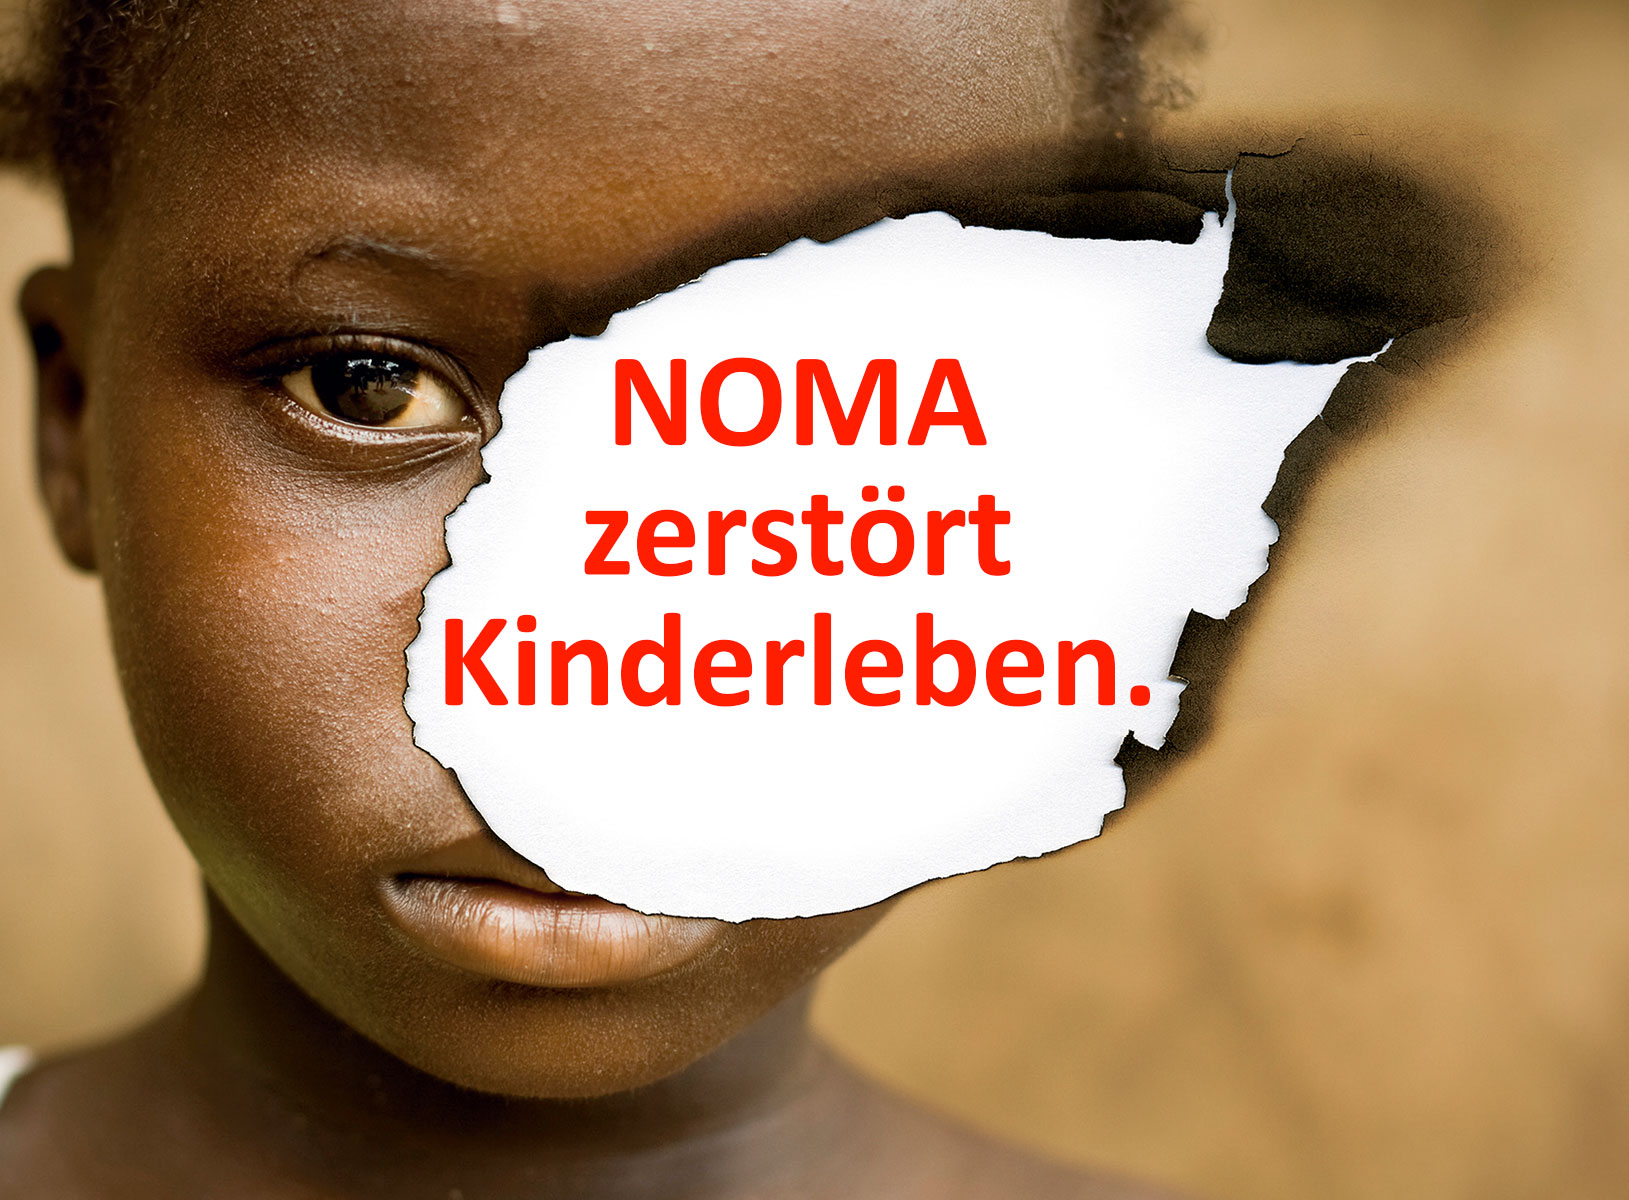 NOMA zerstört Kinderleben. Jährlich erkranken gemäss der Weltgesundheitsorganisati on WHO weltweit immer noch gegen 100‘000 Kinder an Noma. Wir schauen nicht weg!